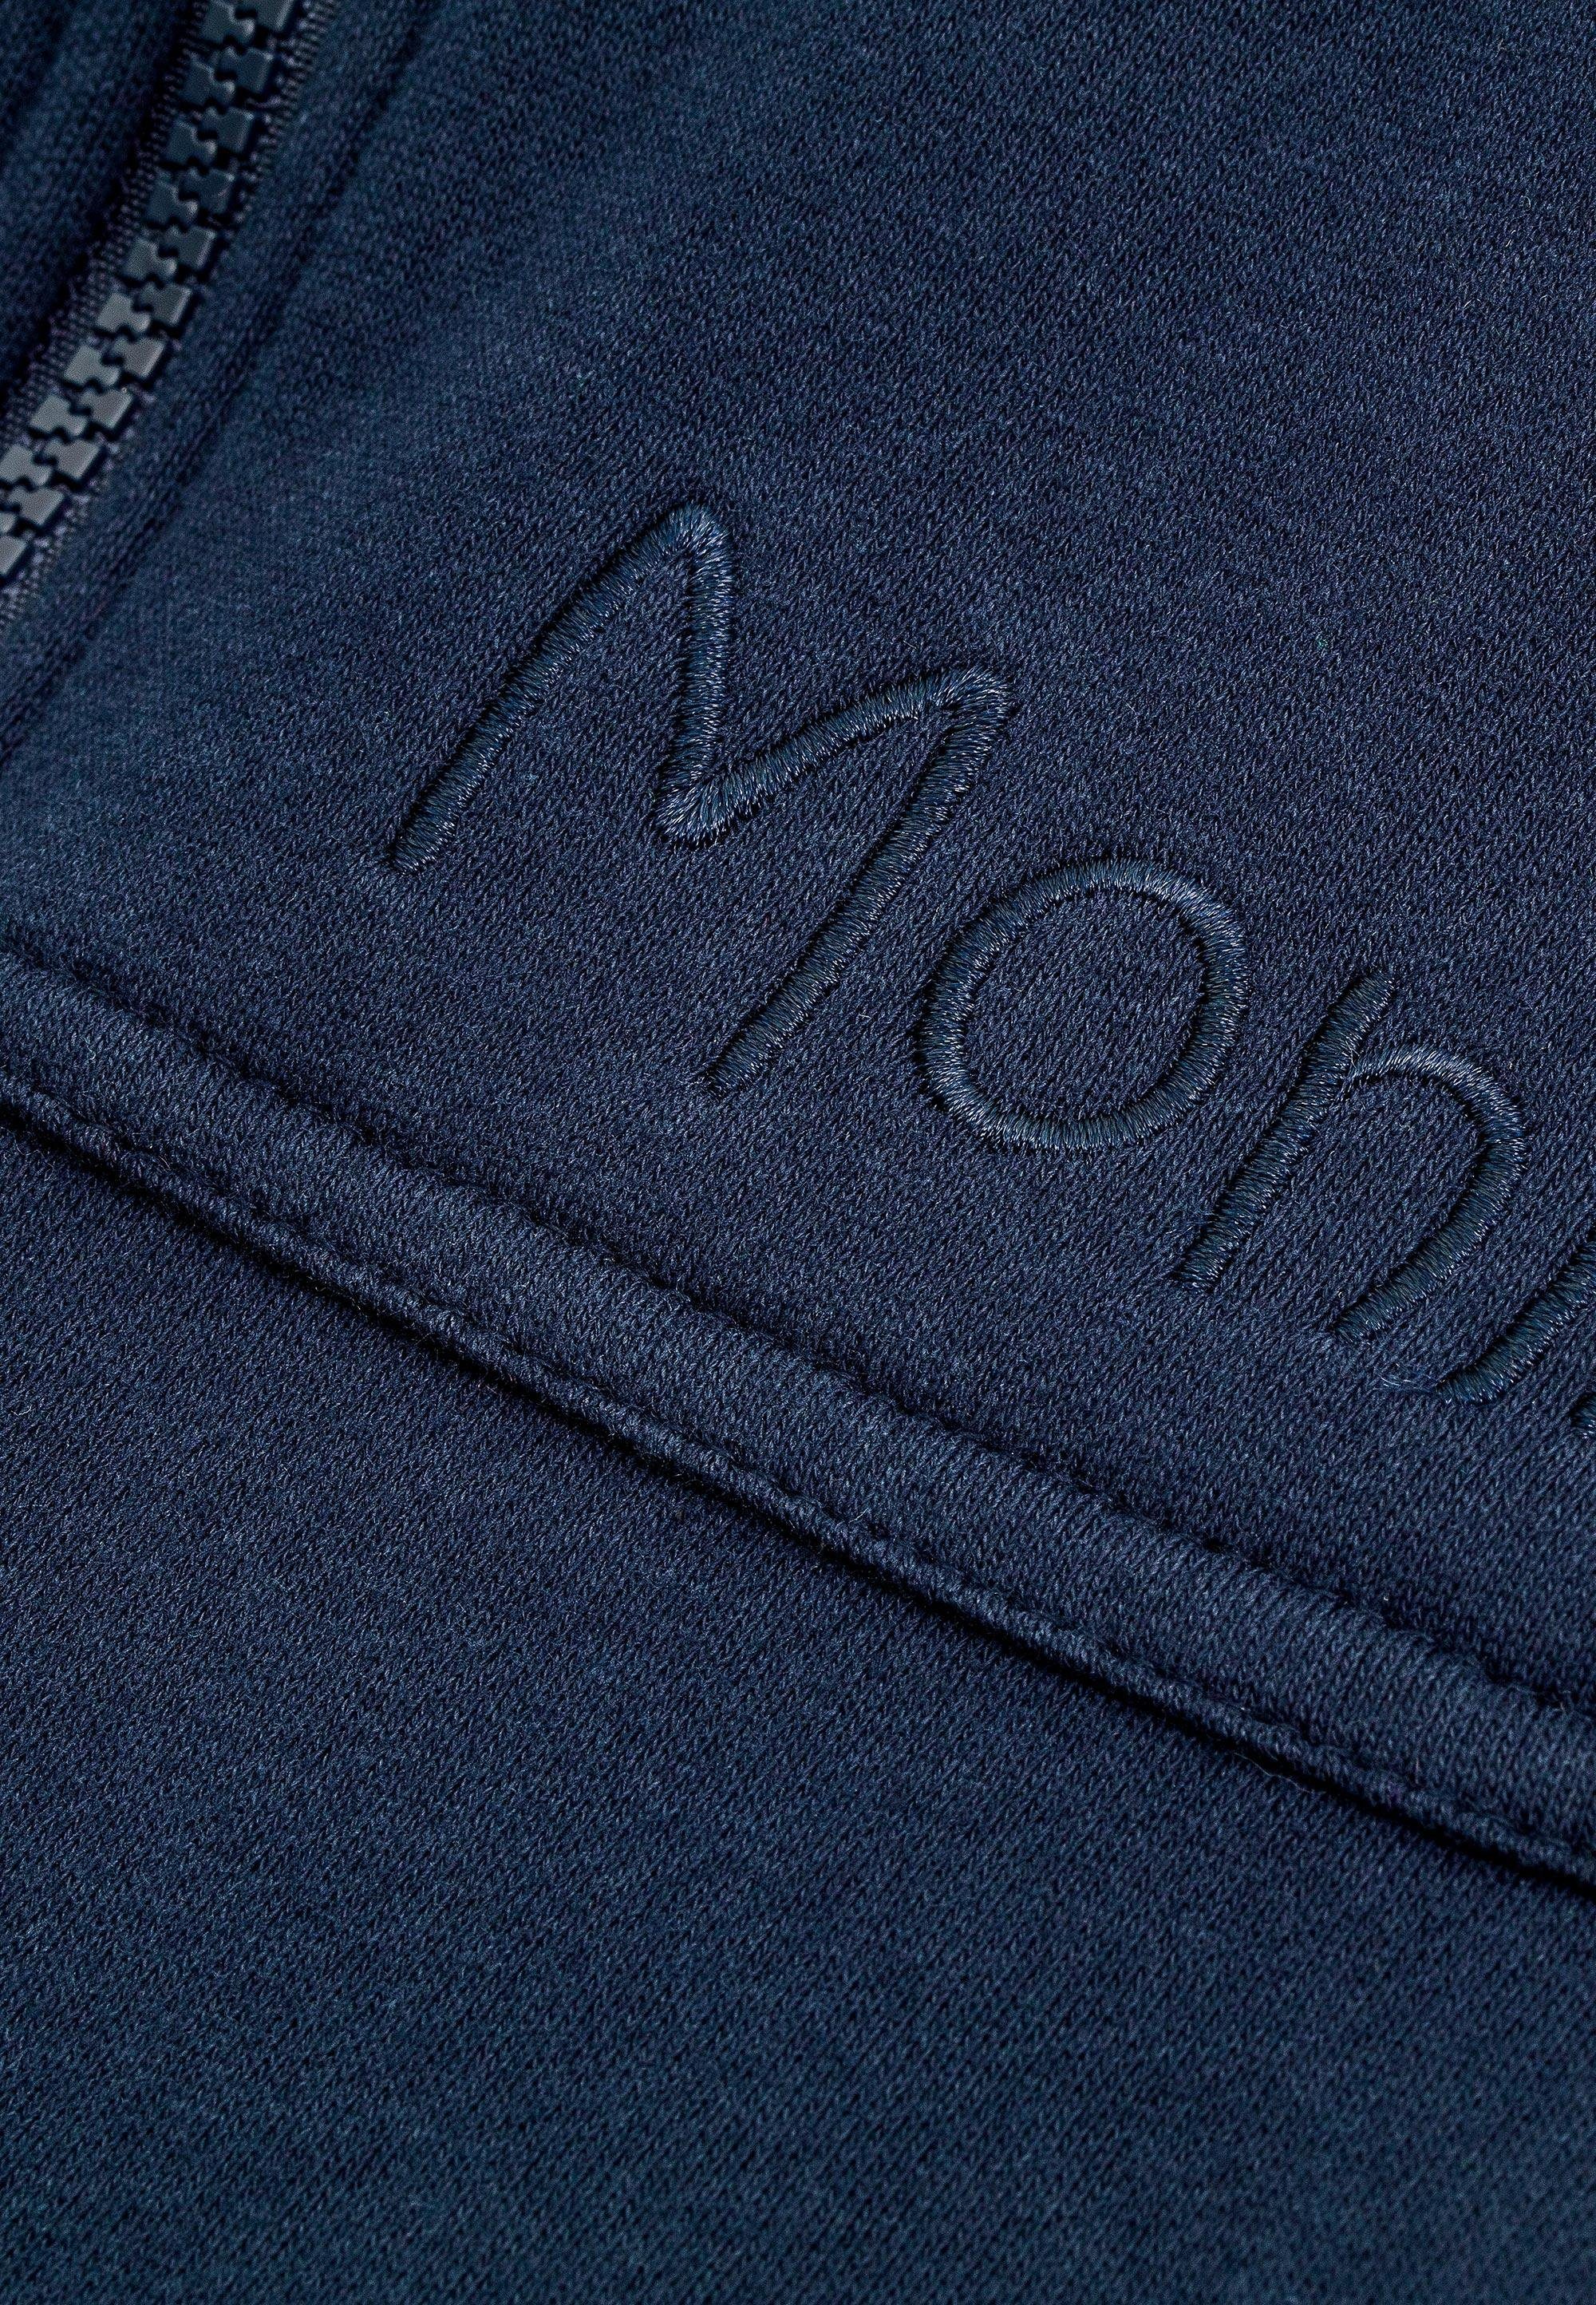 Moniz Jumpsuit Material kuschelig weichem dunkelblau aus